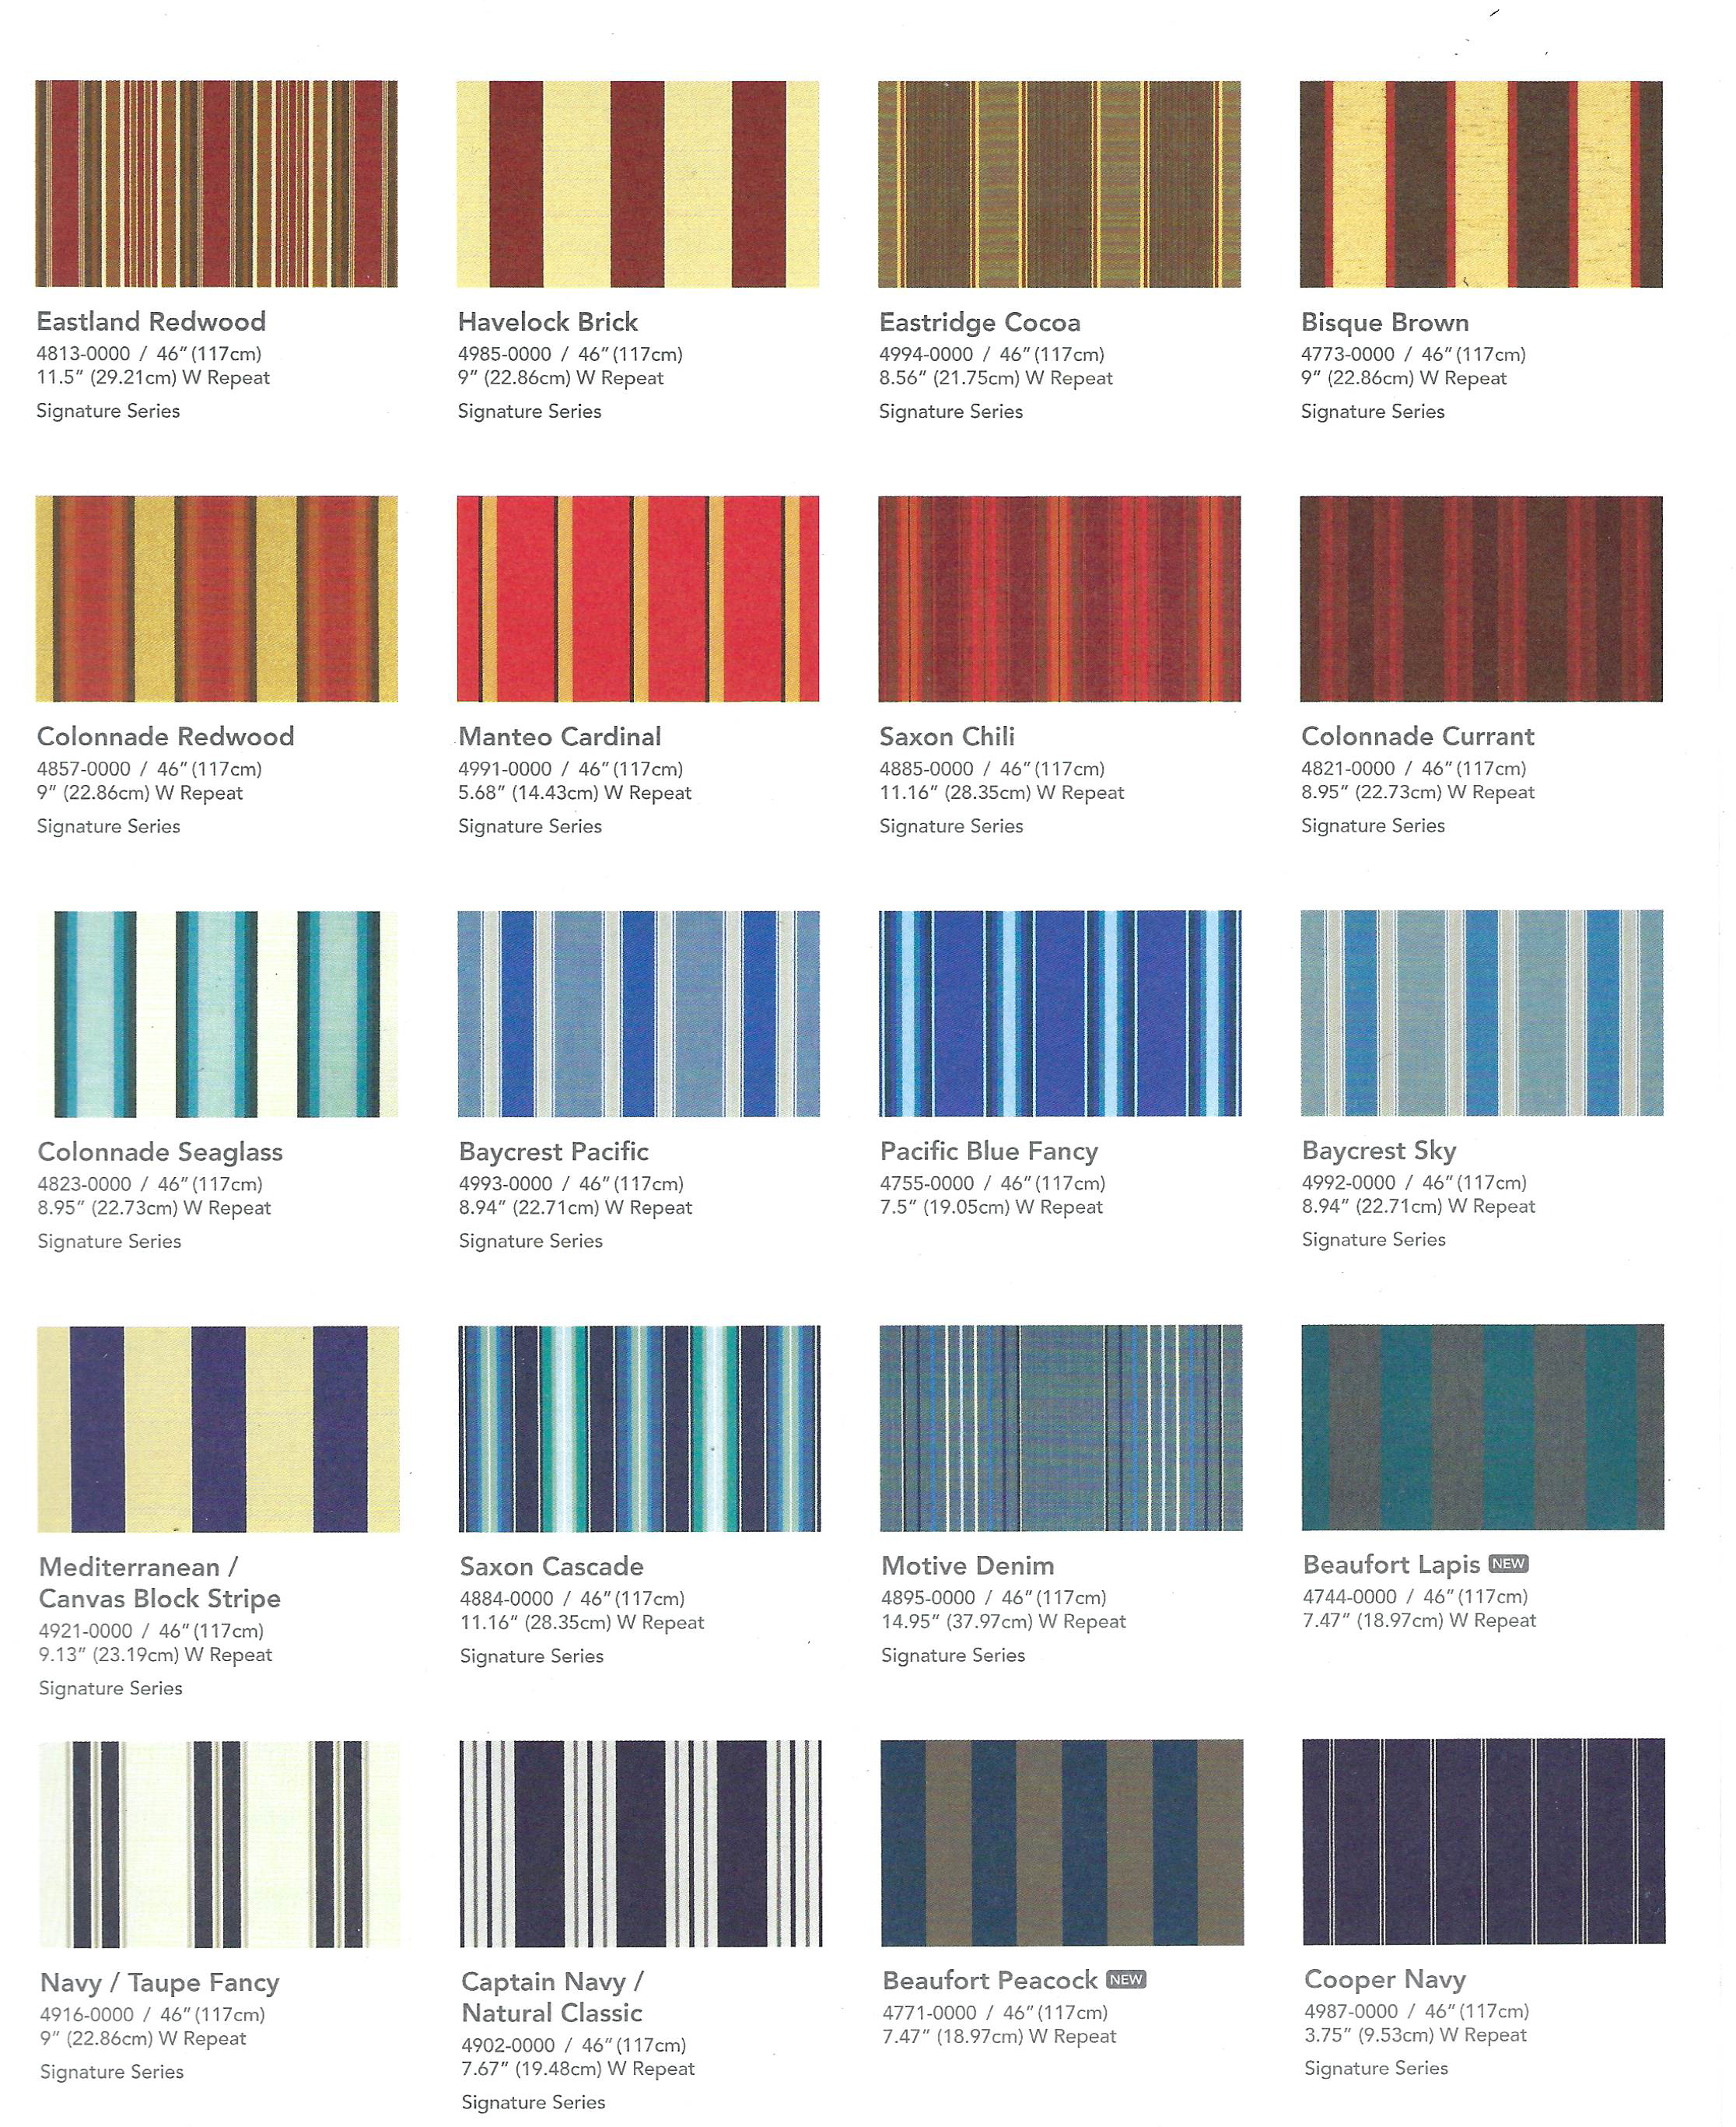 Sunbrella Fabric Color Chart